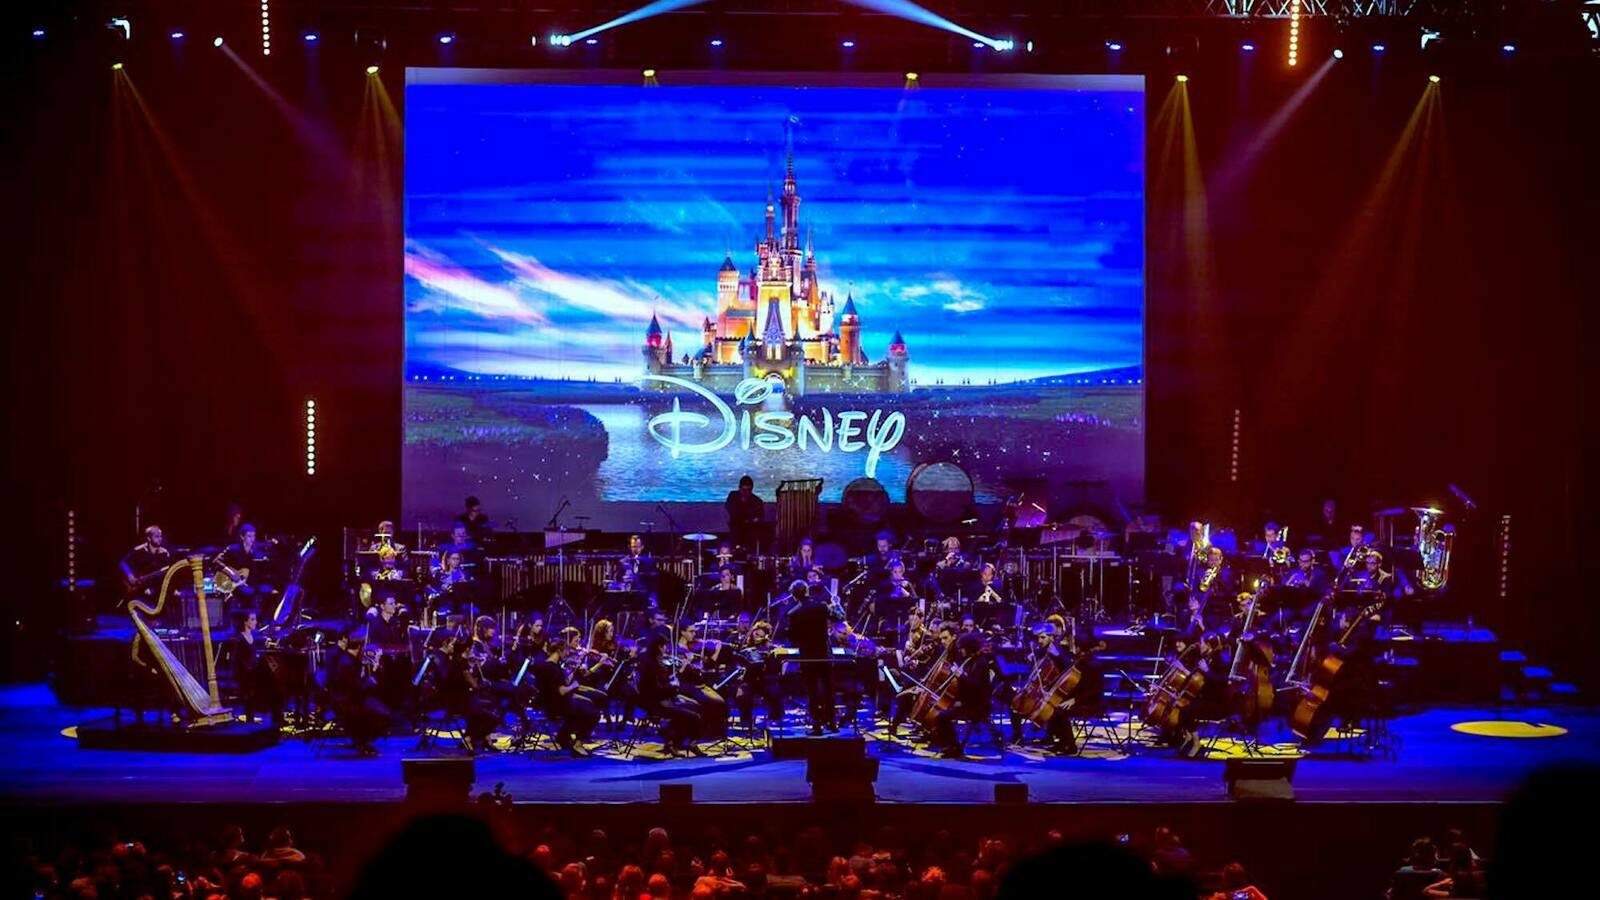 Disney 100 ans - Le concert évènement 